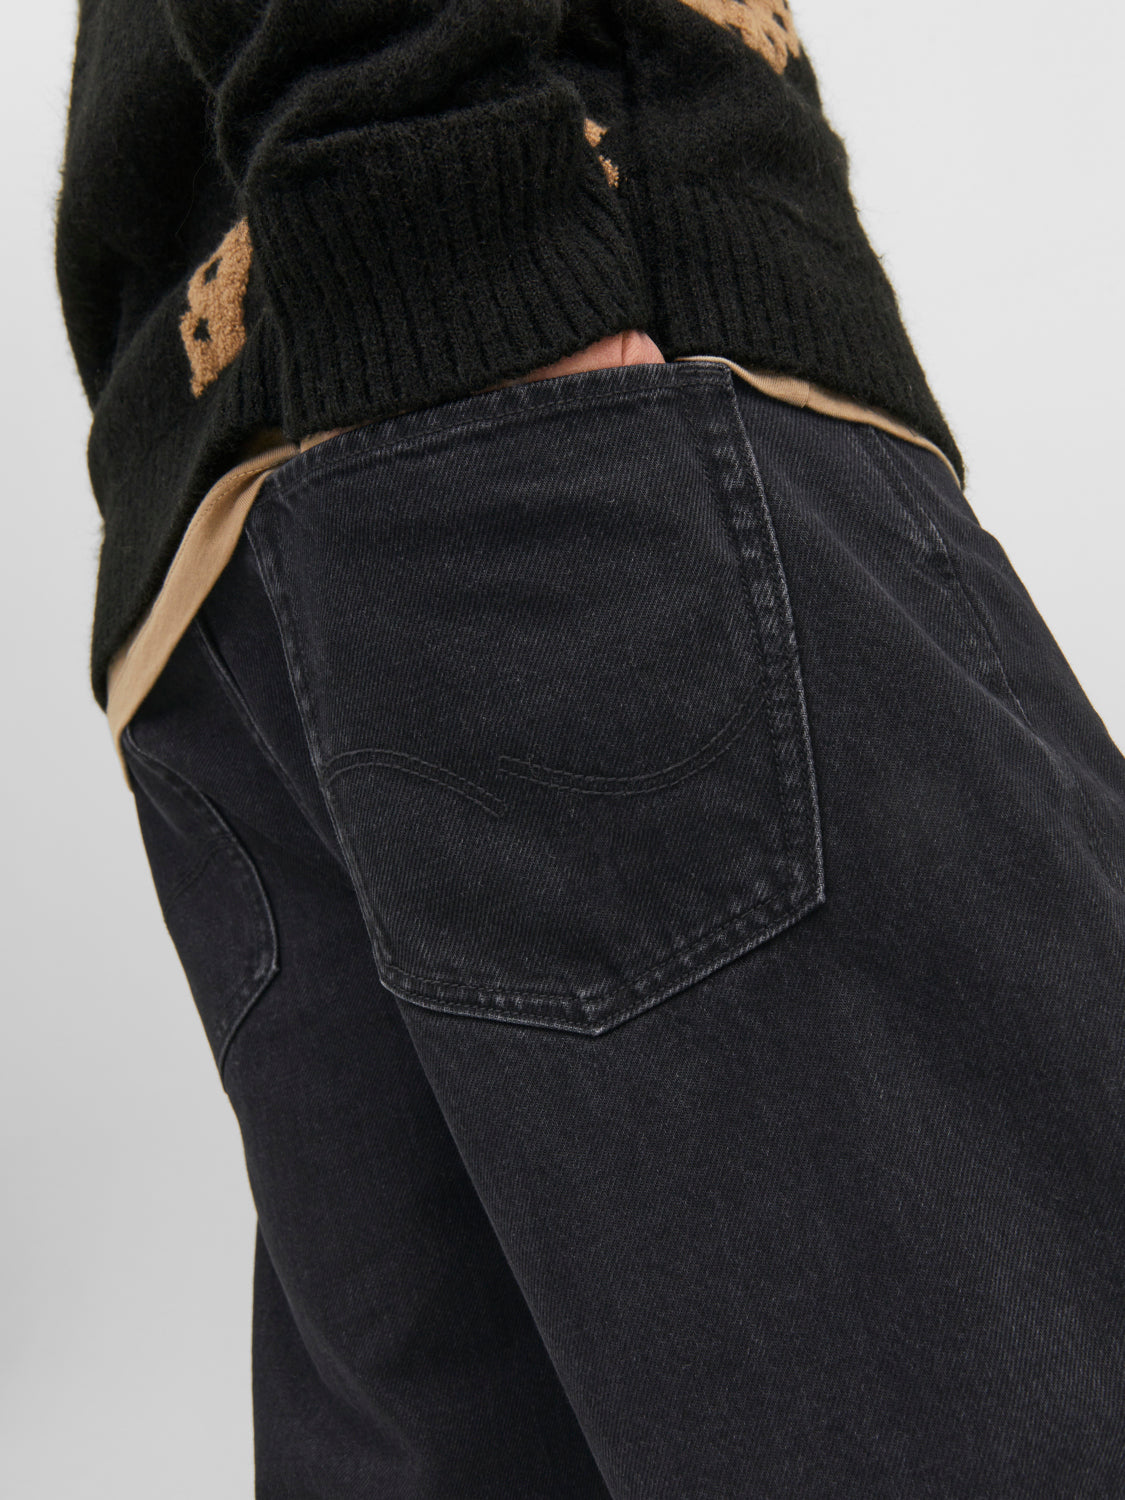 JJIALEX Jeans - Black Denim